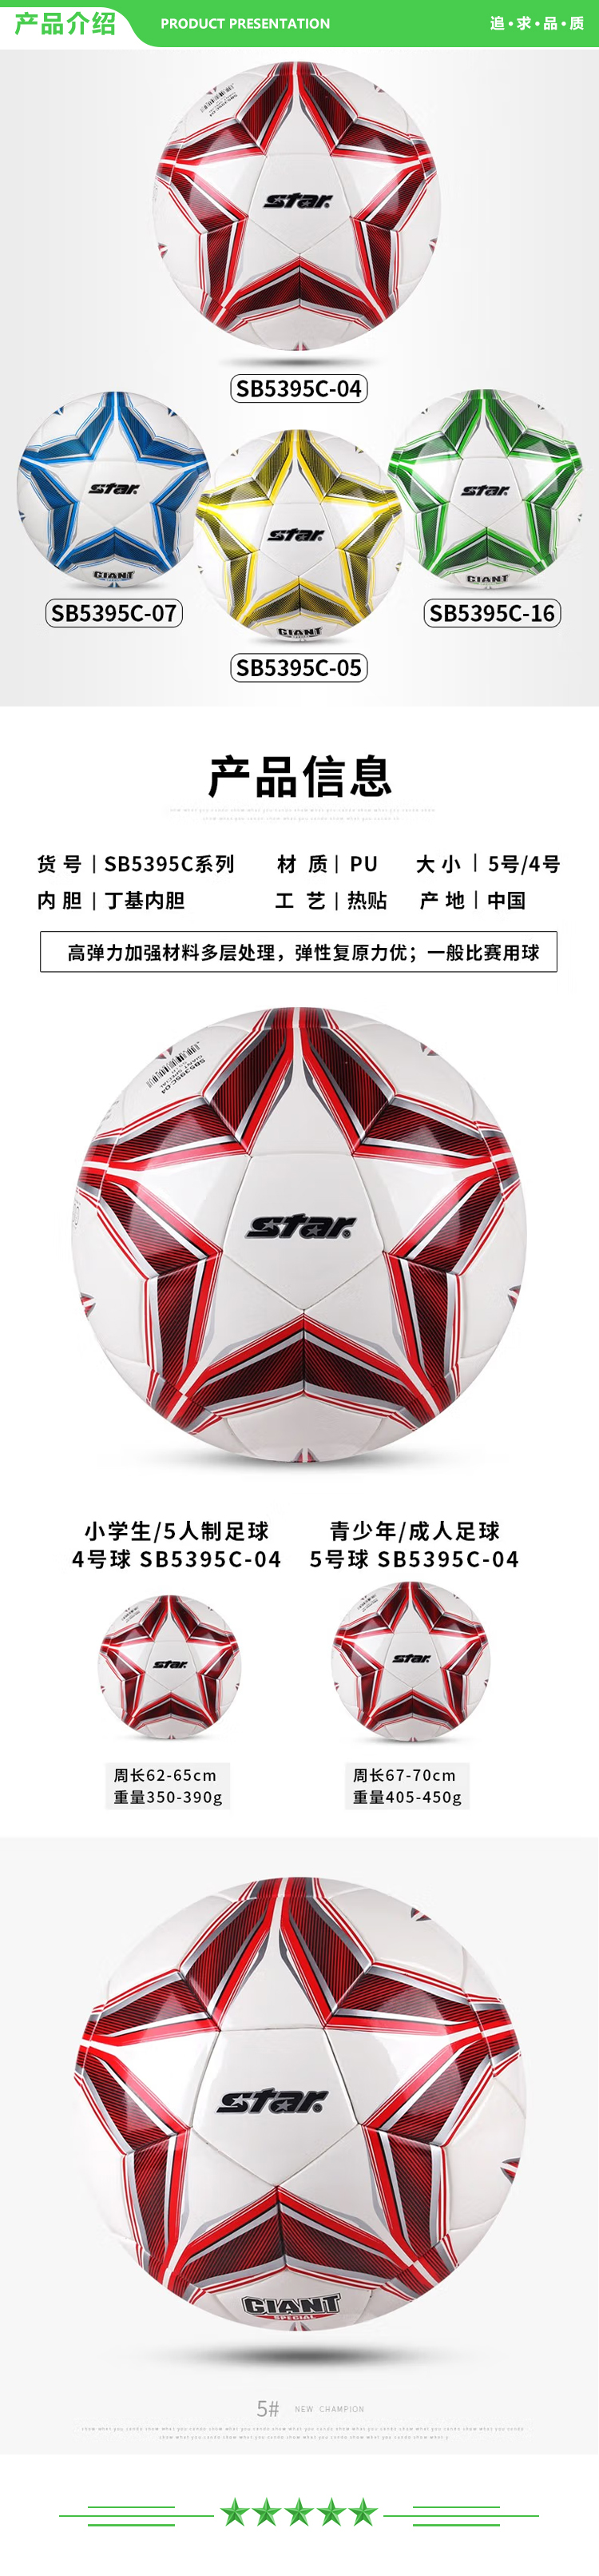 世达 star SB5395C-04（5号成人用球）足球 成人5号比赛训练用球成人青少年学生耐磨热贴合足球.jpg